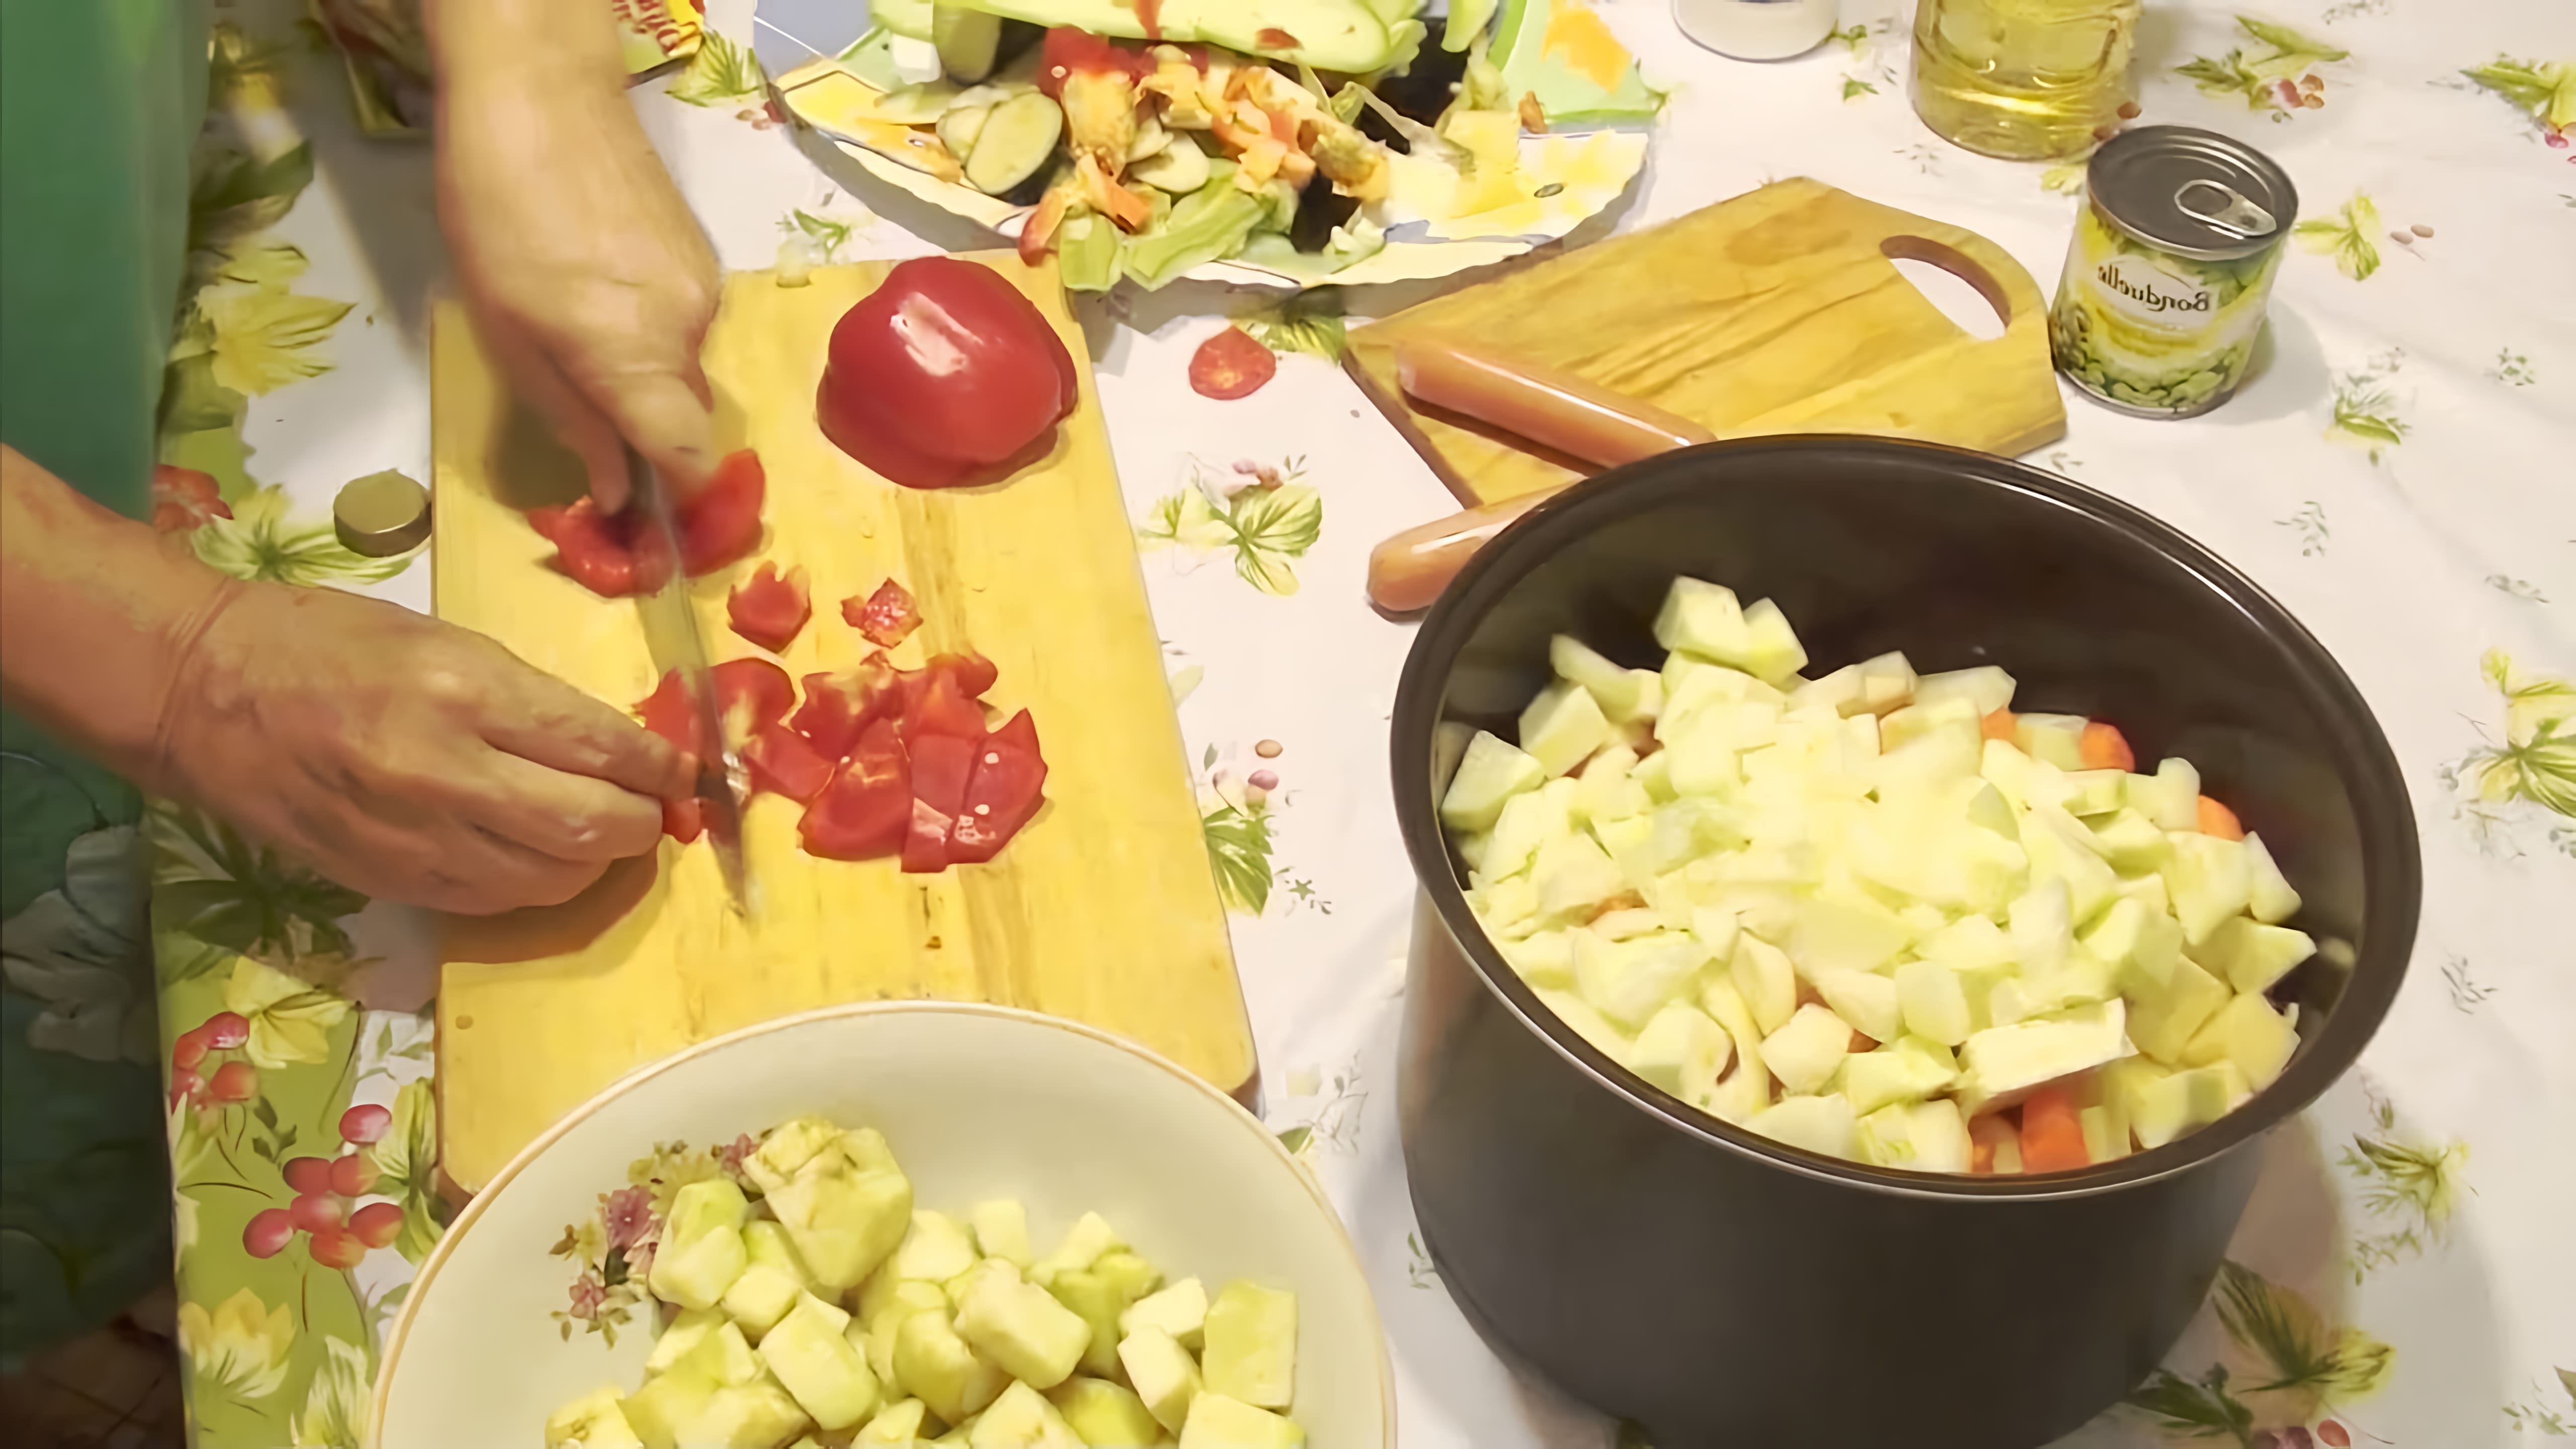 В этом видео демонстрируется процесс приготовления овощного рагу в мультиварке